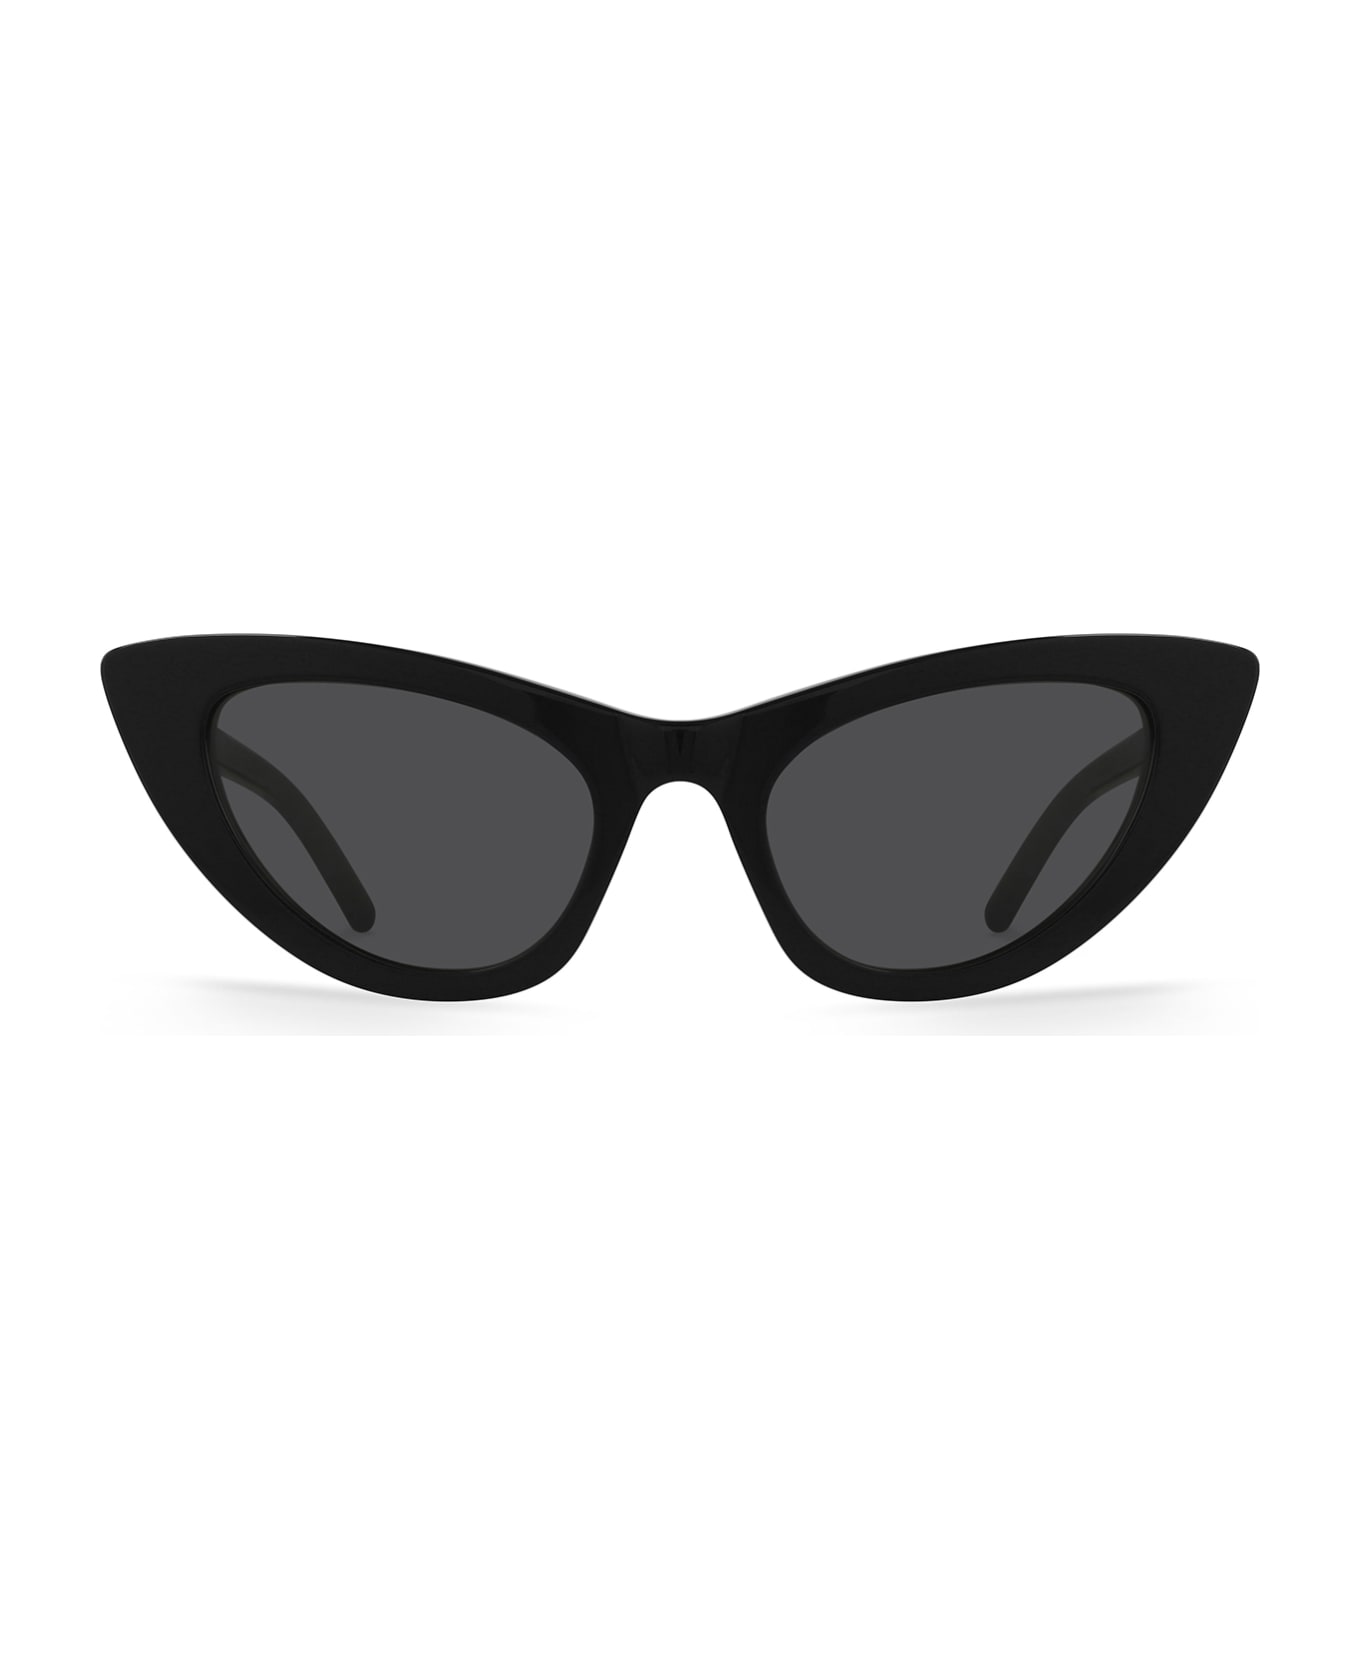 Saint Laurent Eyewear Sl 213 Black Sunglasses - Black サングラス